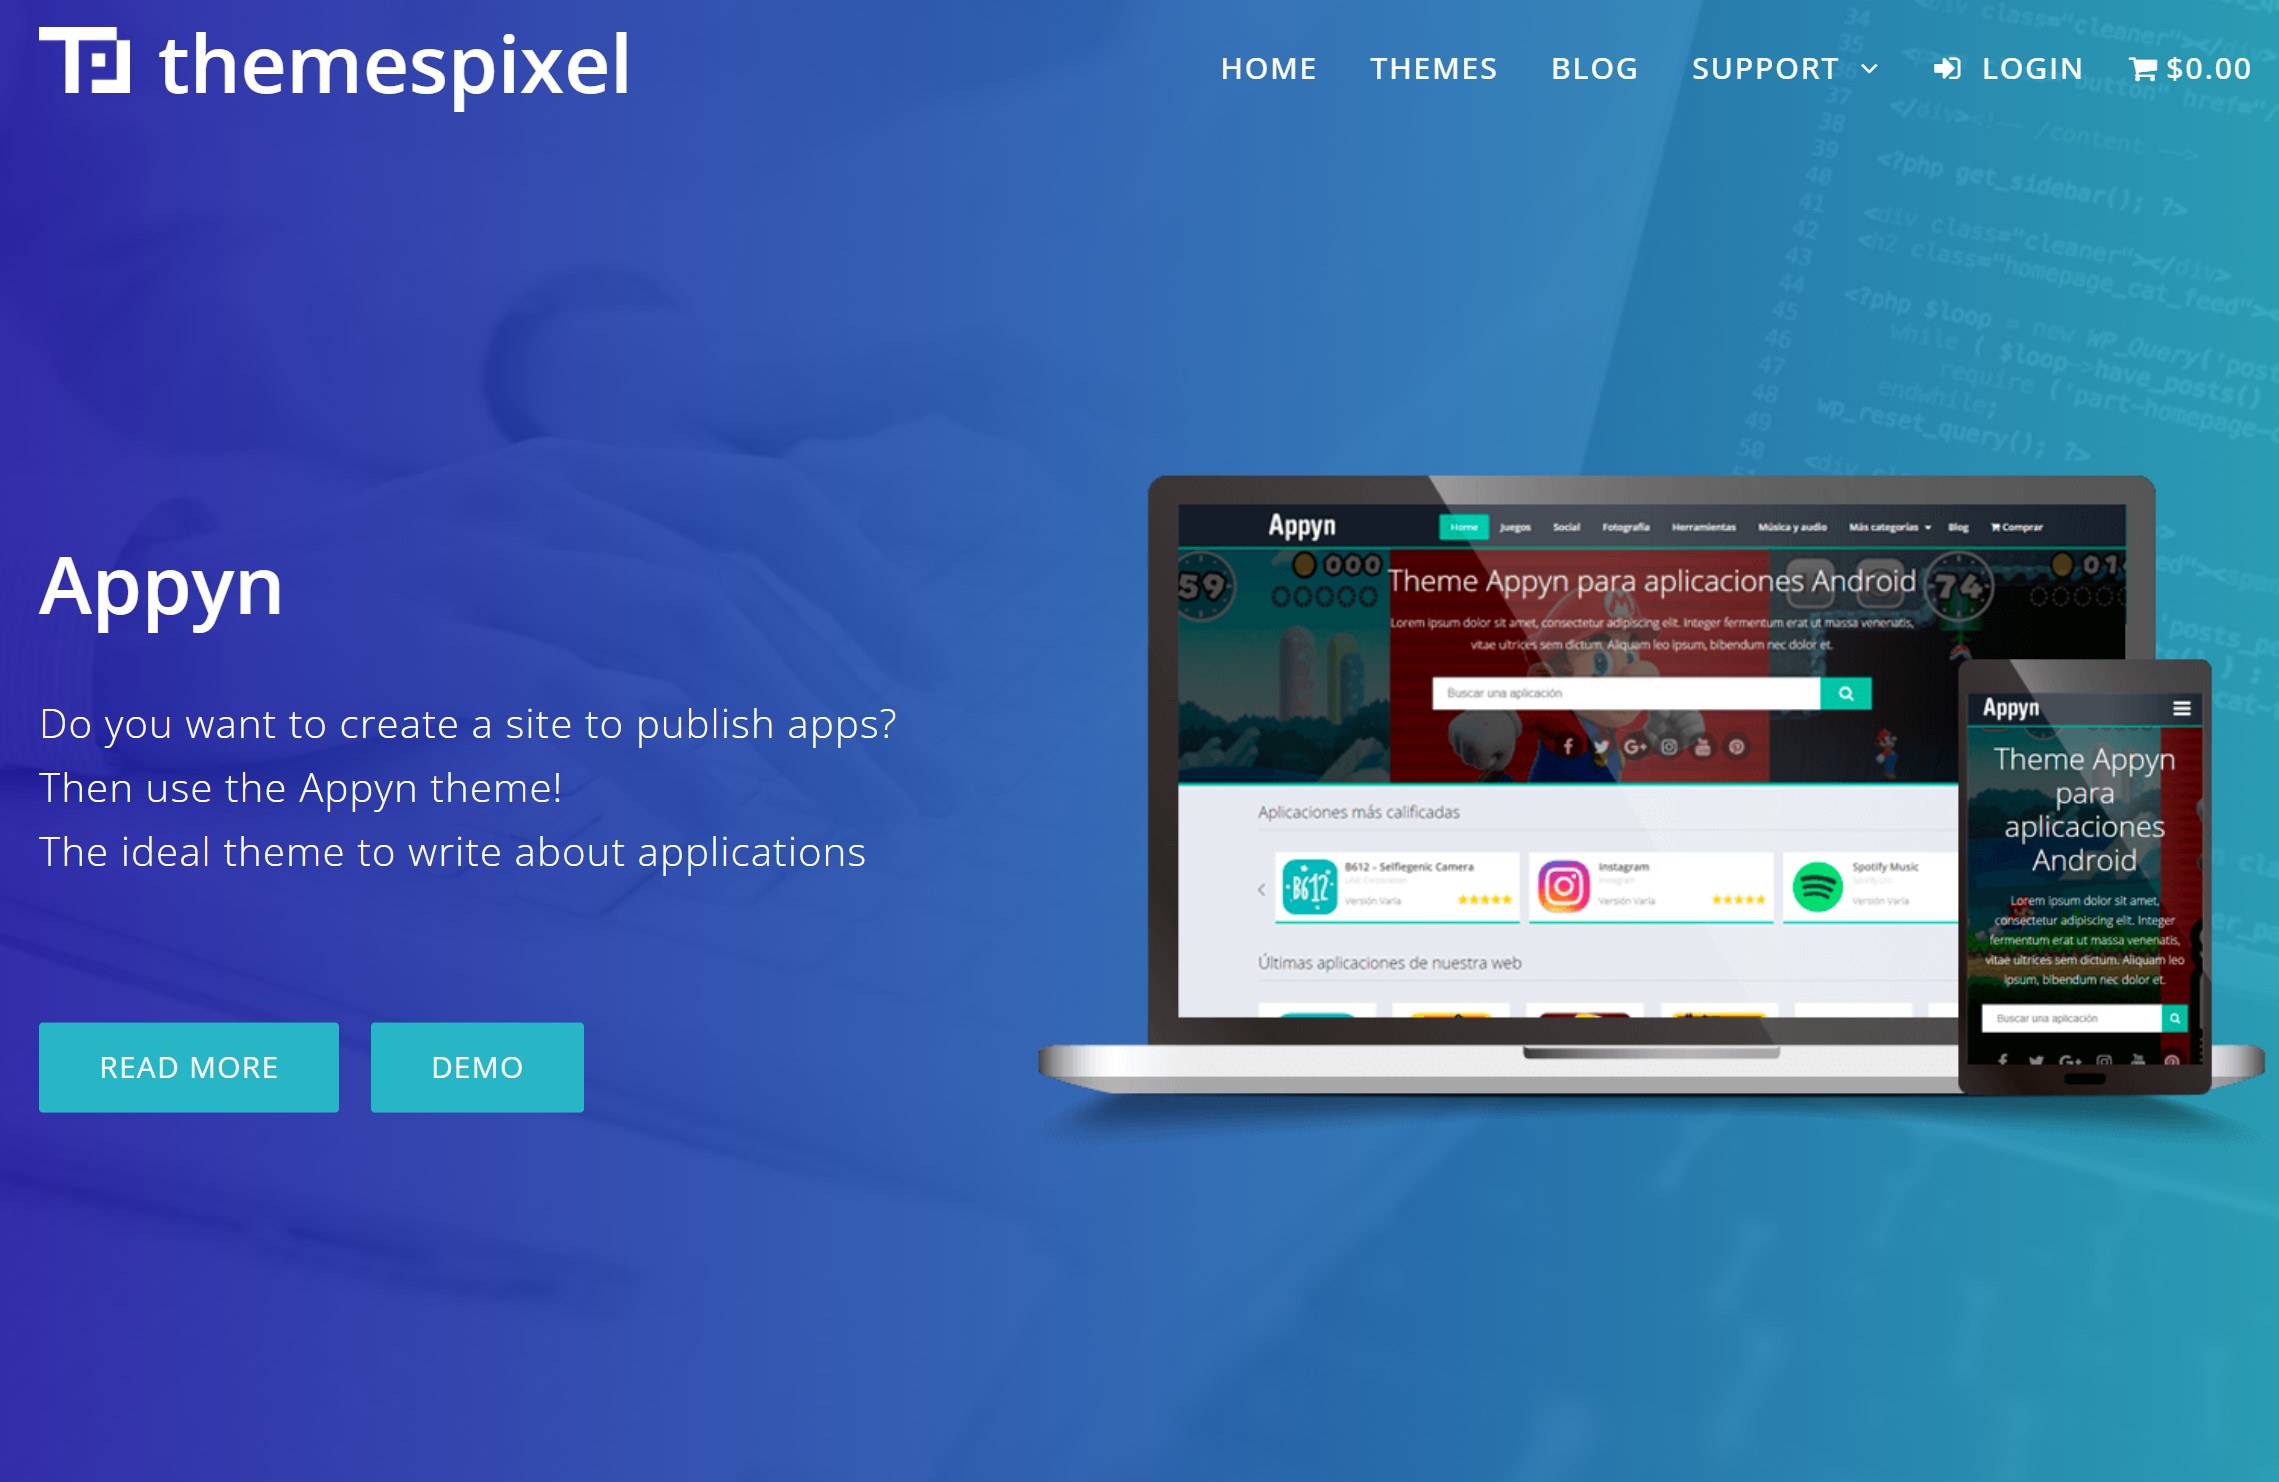 Appyn – Themespixel WordPress Theme 2.0.10